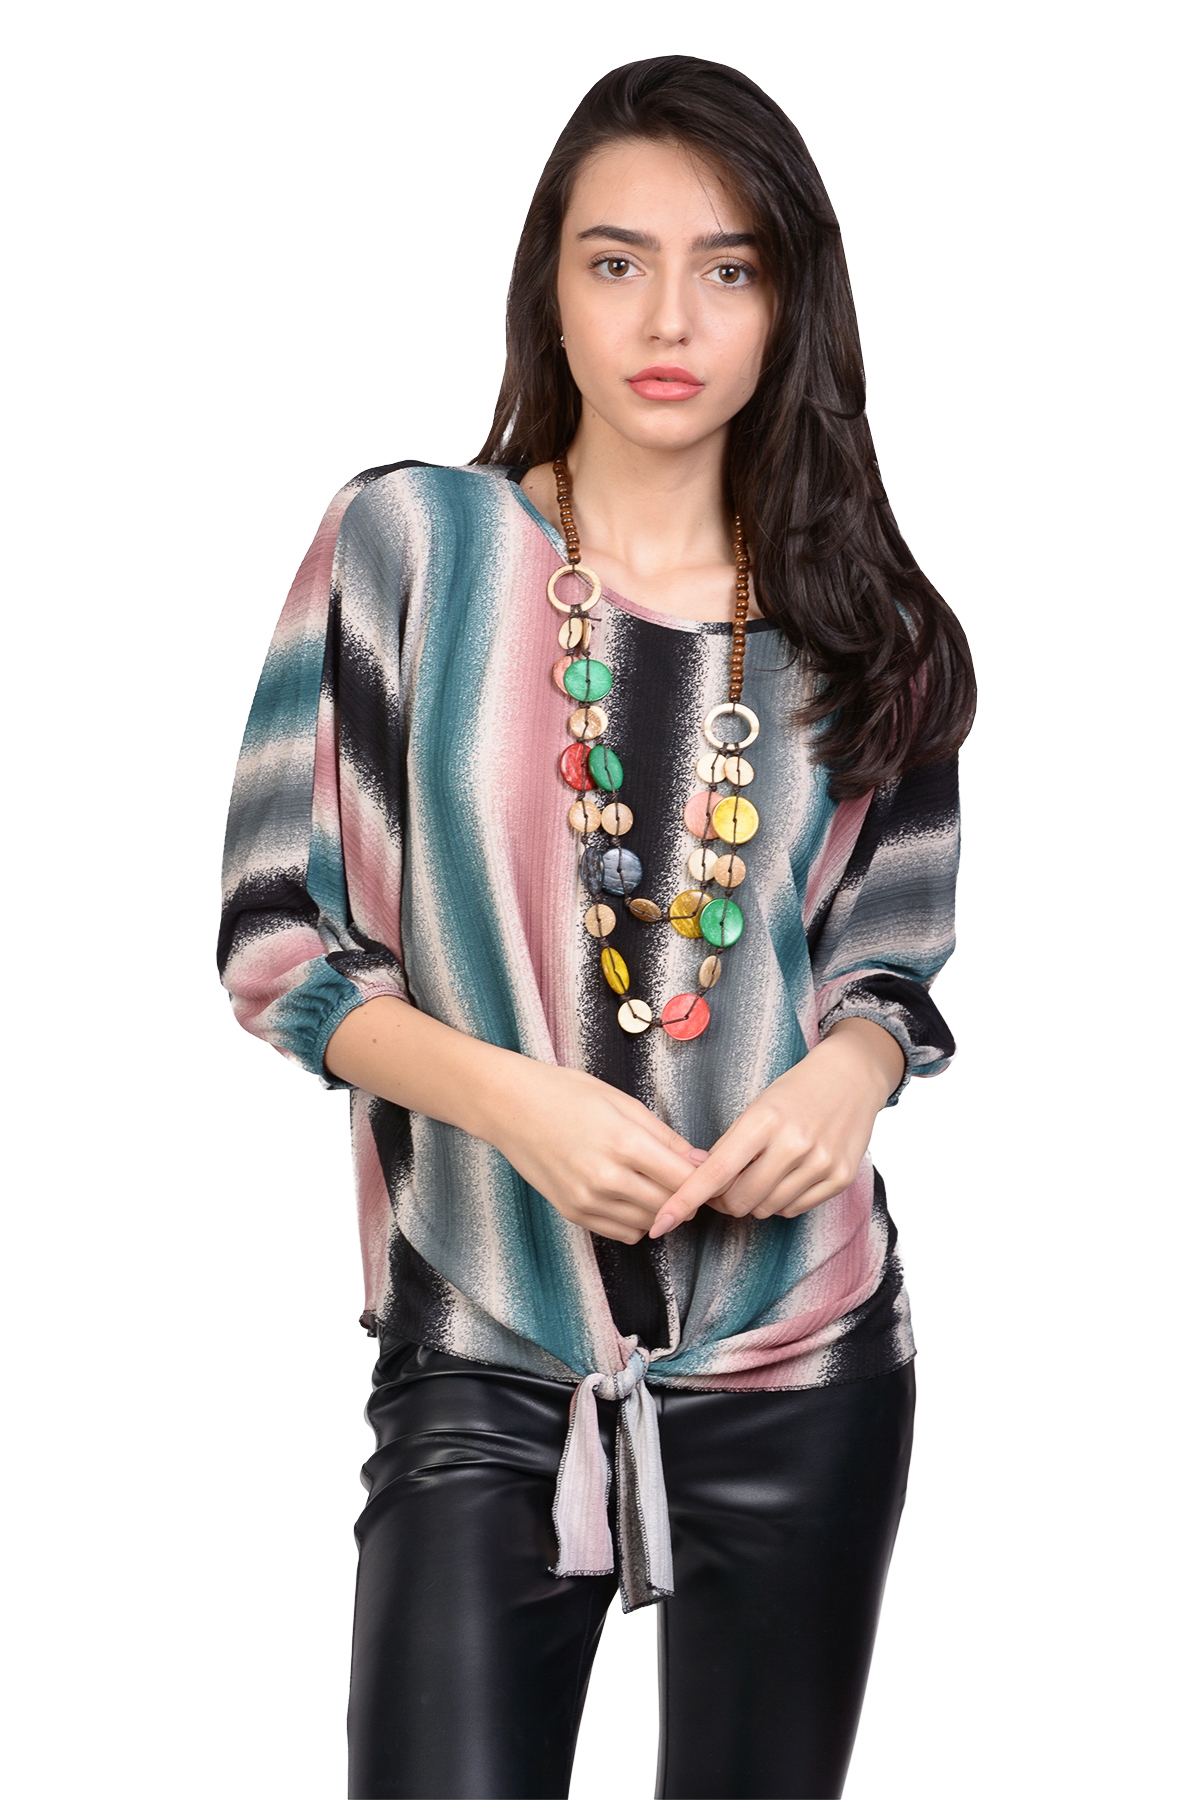 Bluza eleganta cu dungi multicolore 9044-1 BL lafemme.ro imagine reduceri